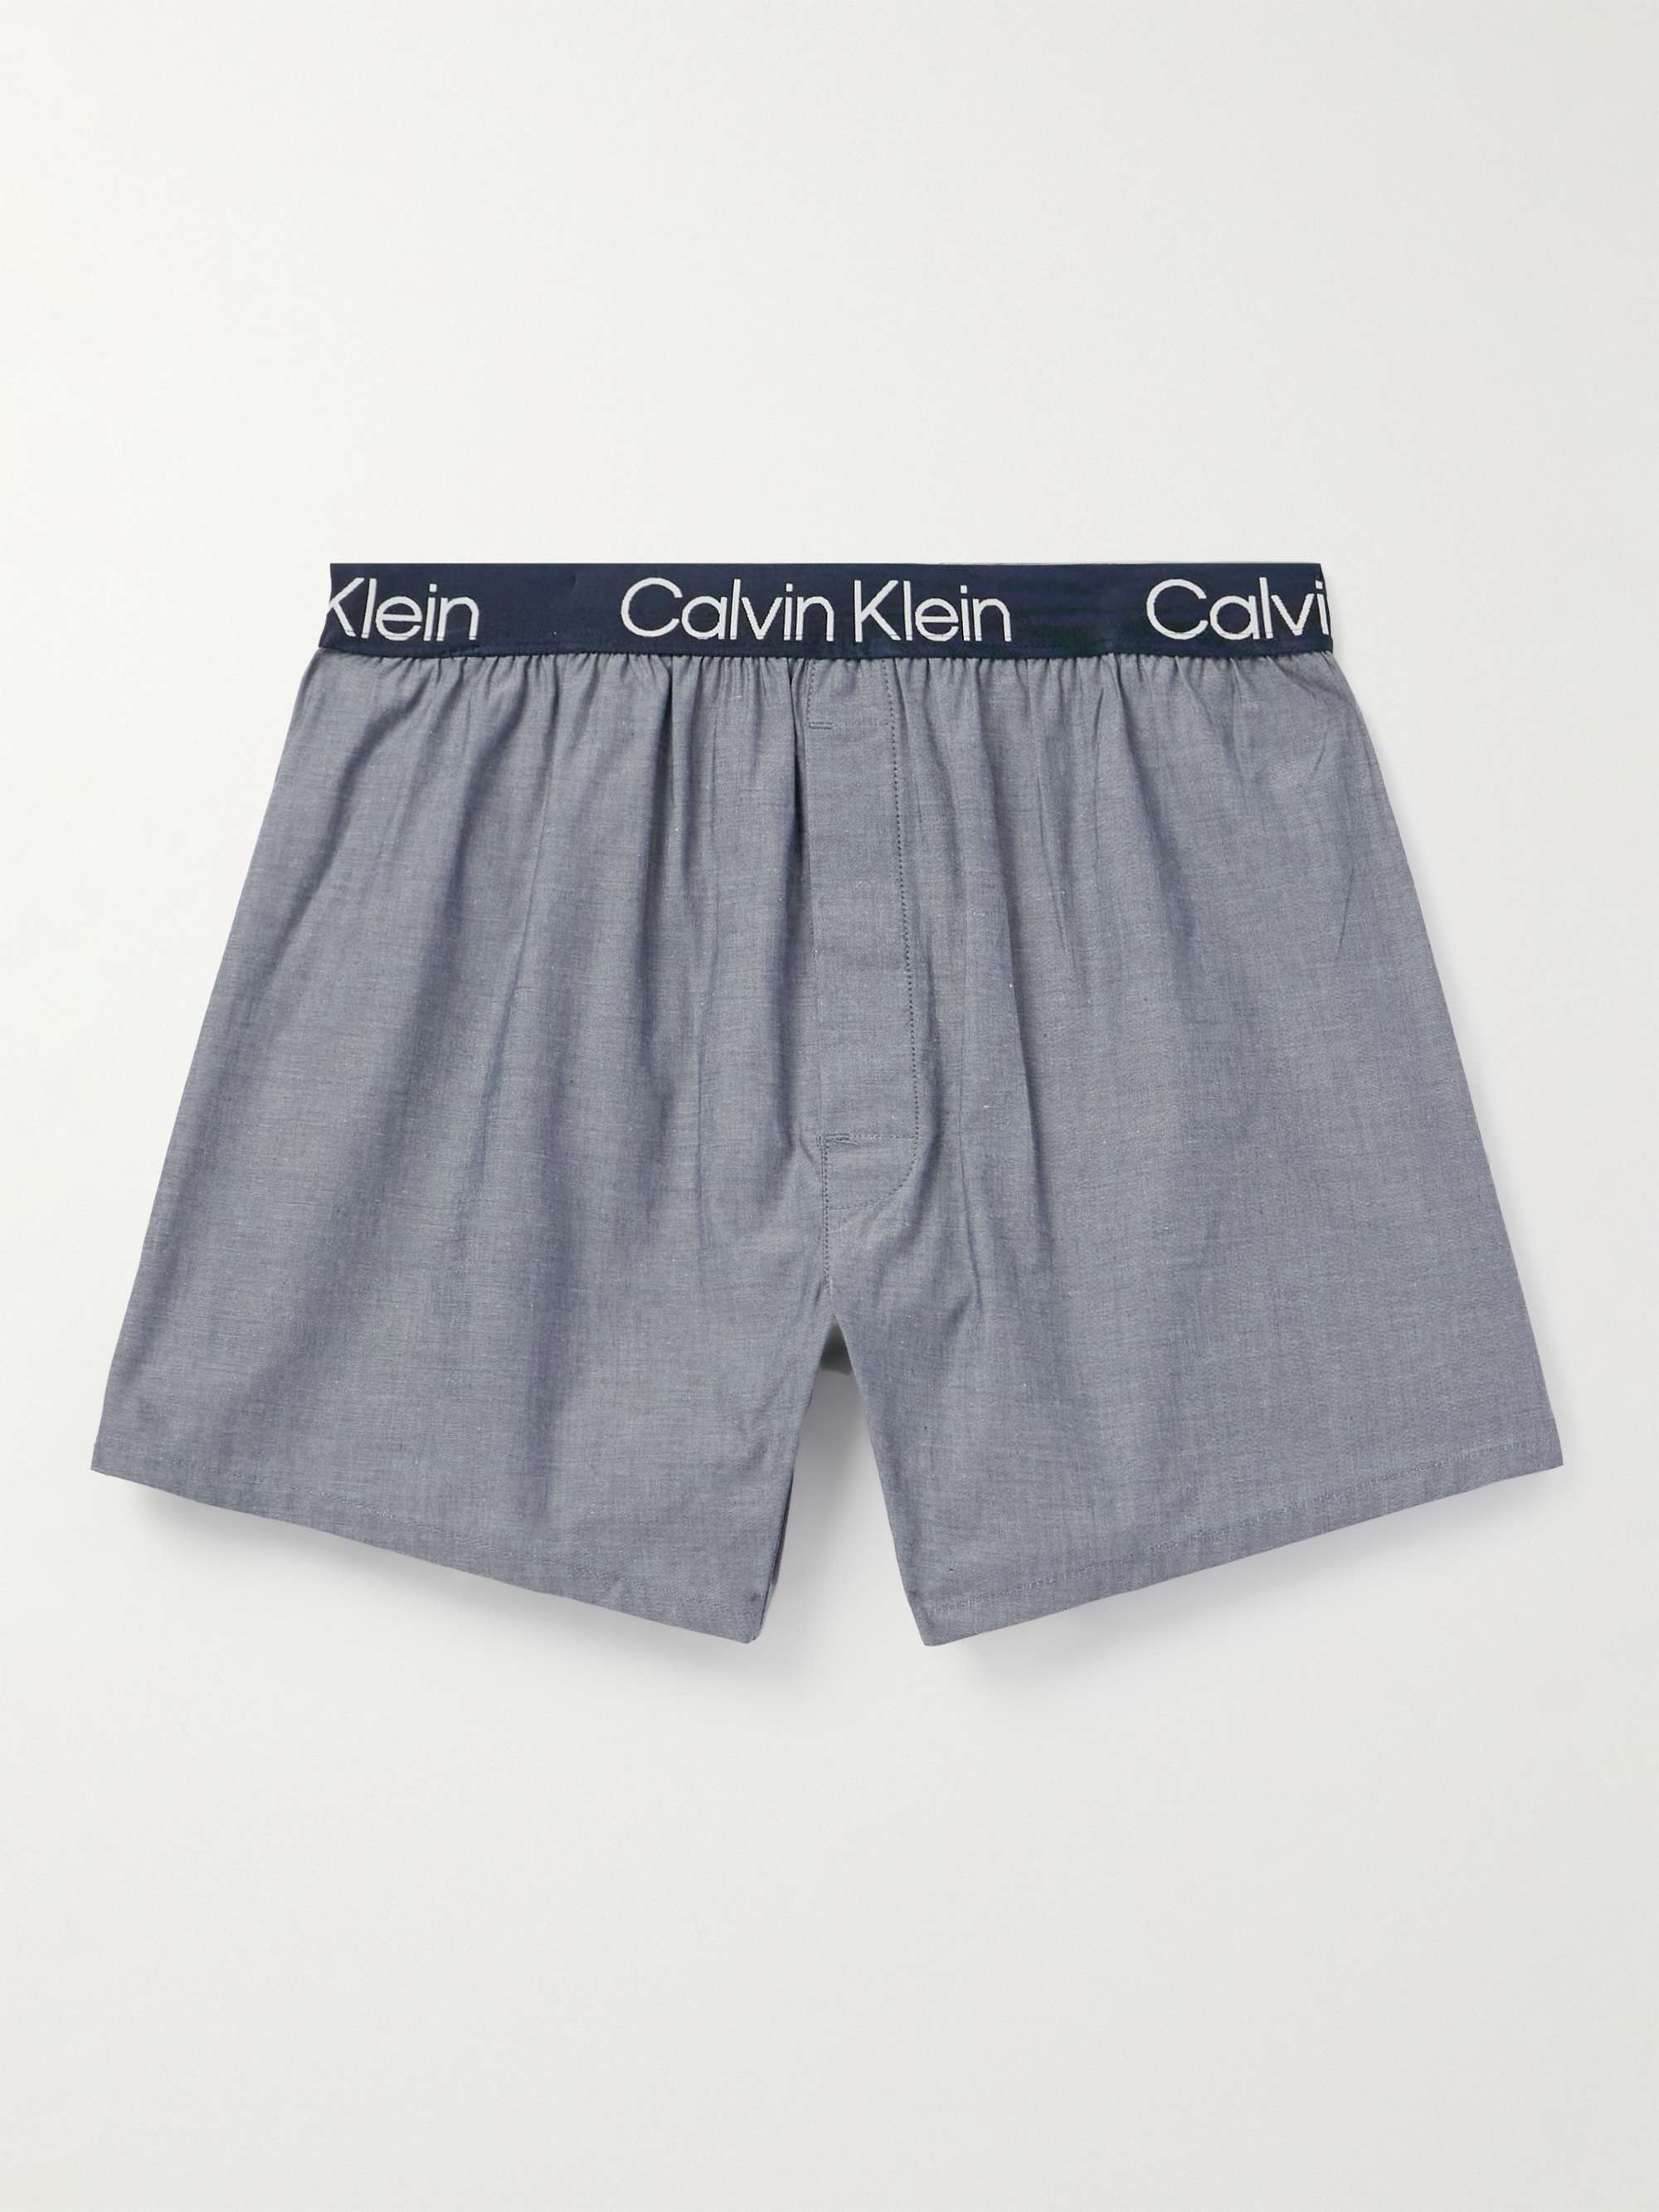 CALVIN KLEIN UNDERWEAR Slim-Fit Stretch-Cotton Chambray Boxer Briefs for  Men